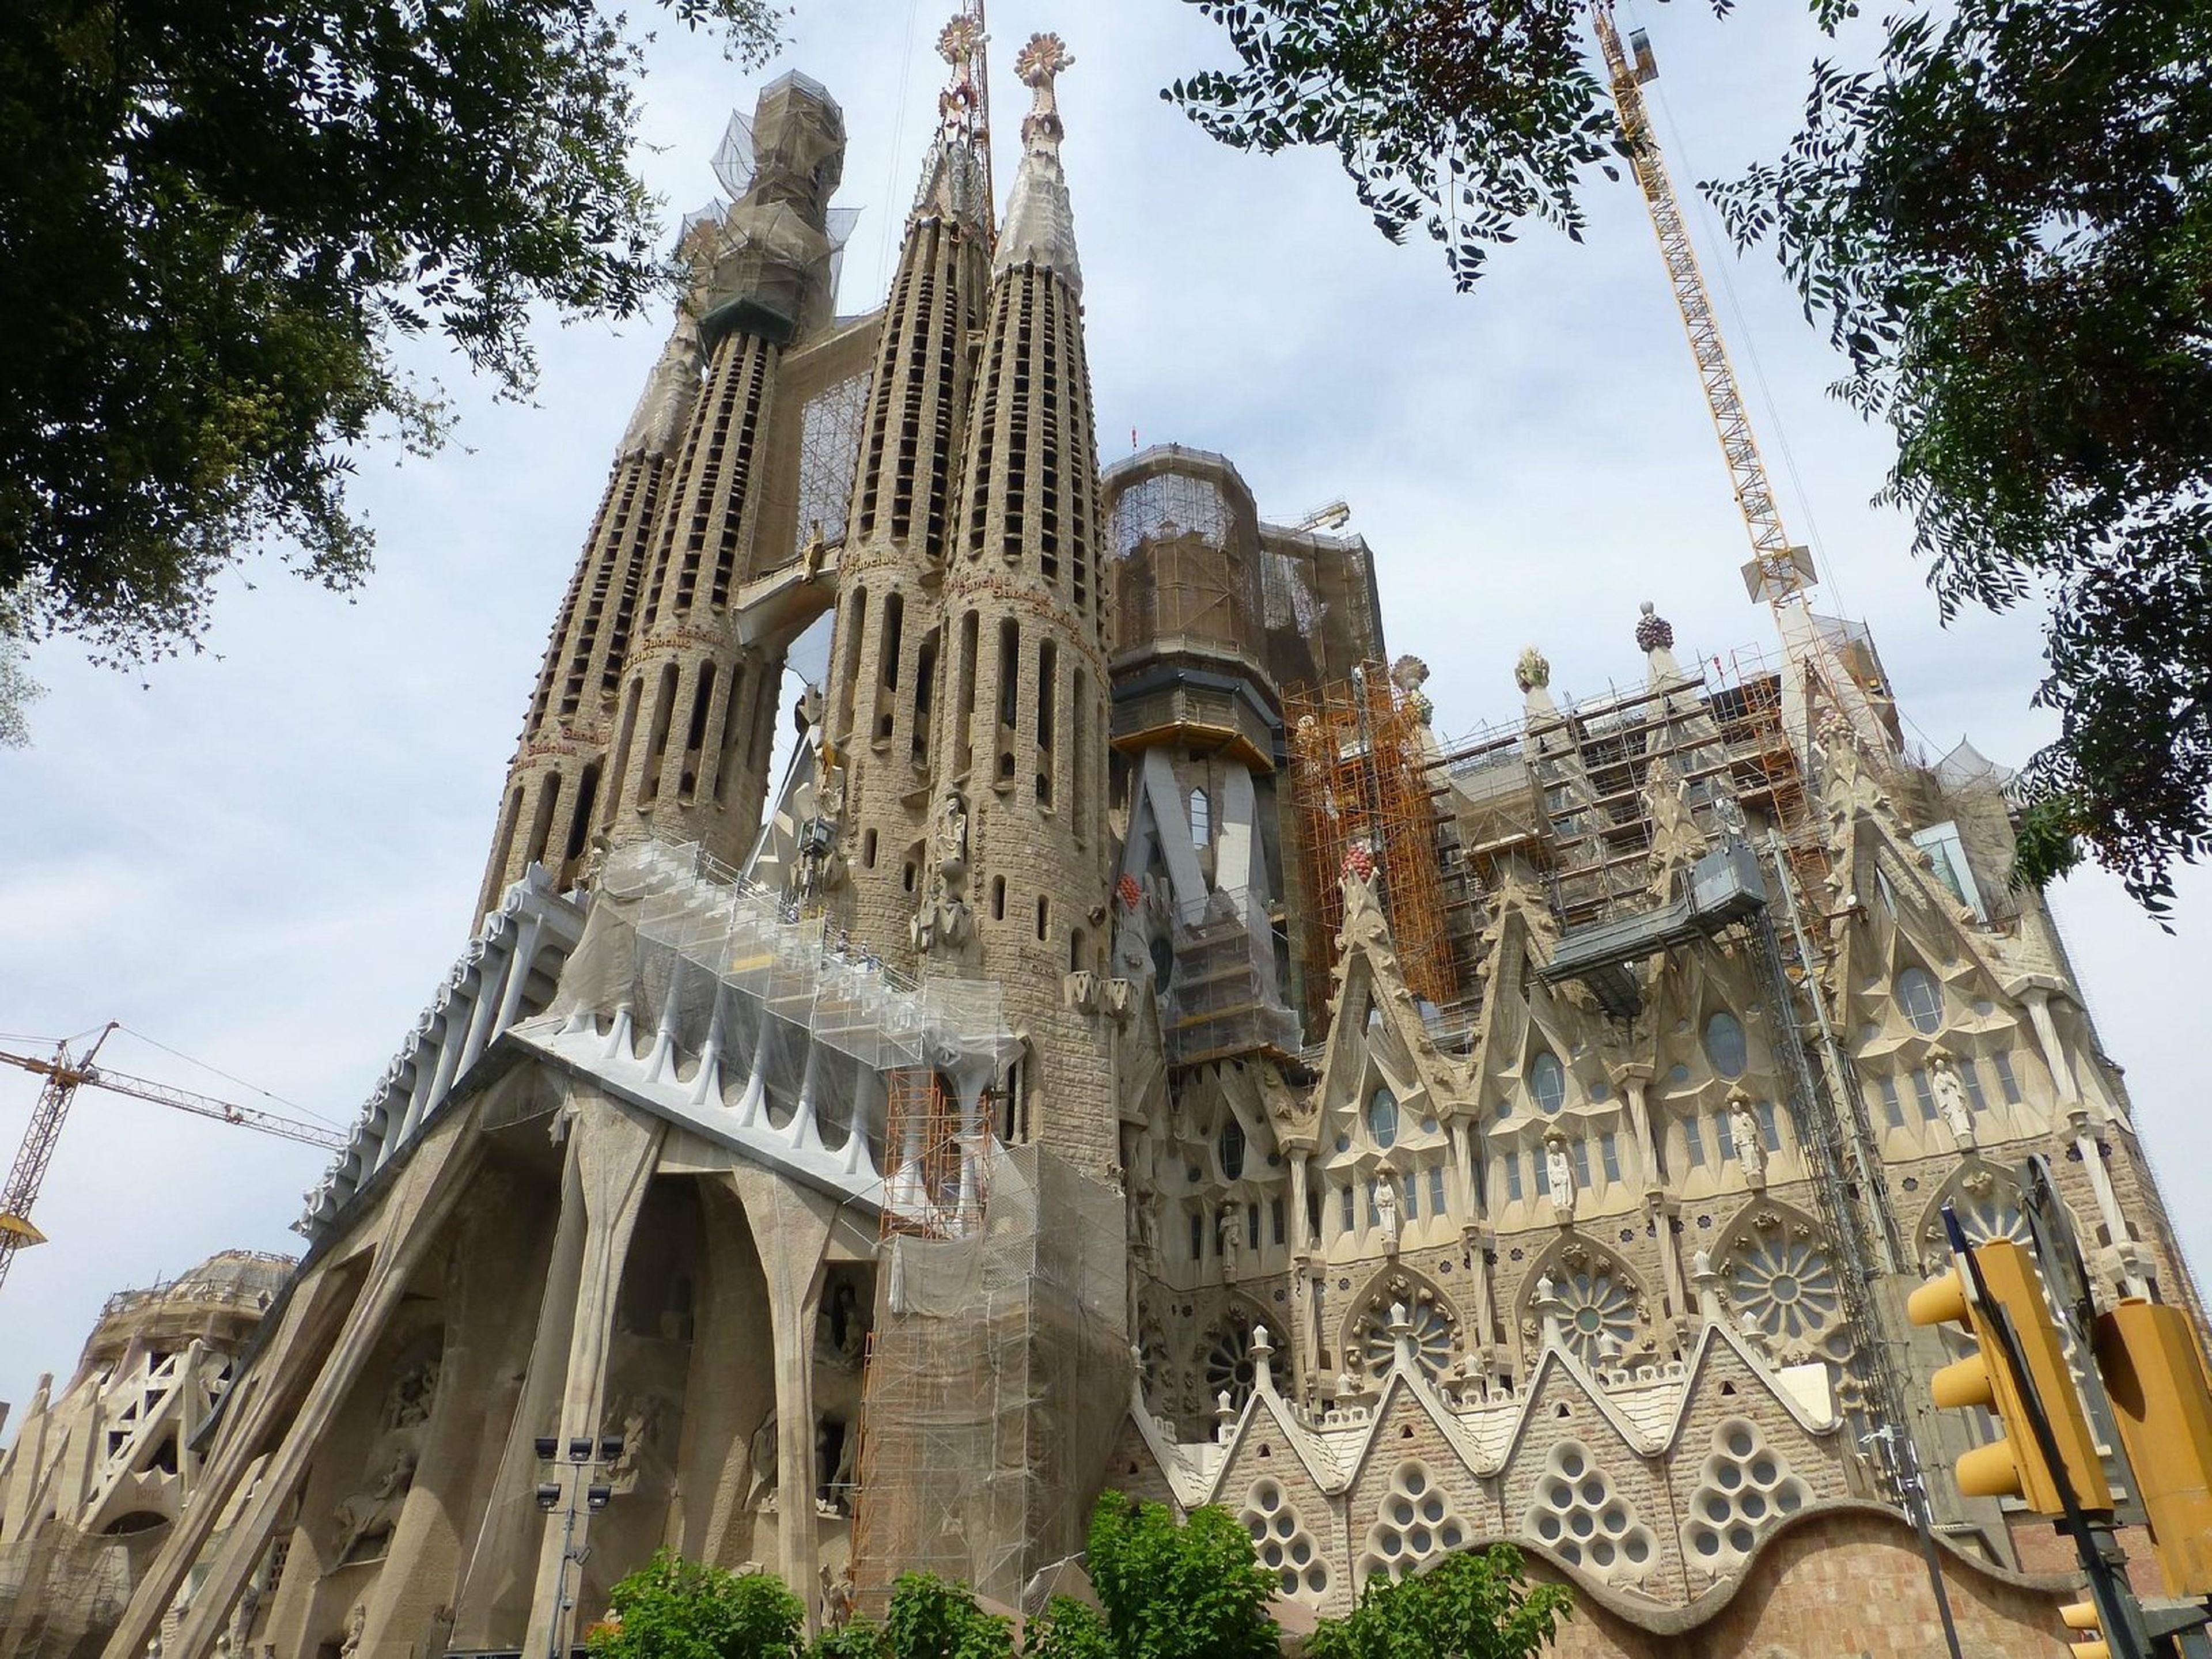 La Sagrada Familia de Barcelona.